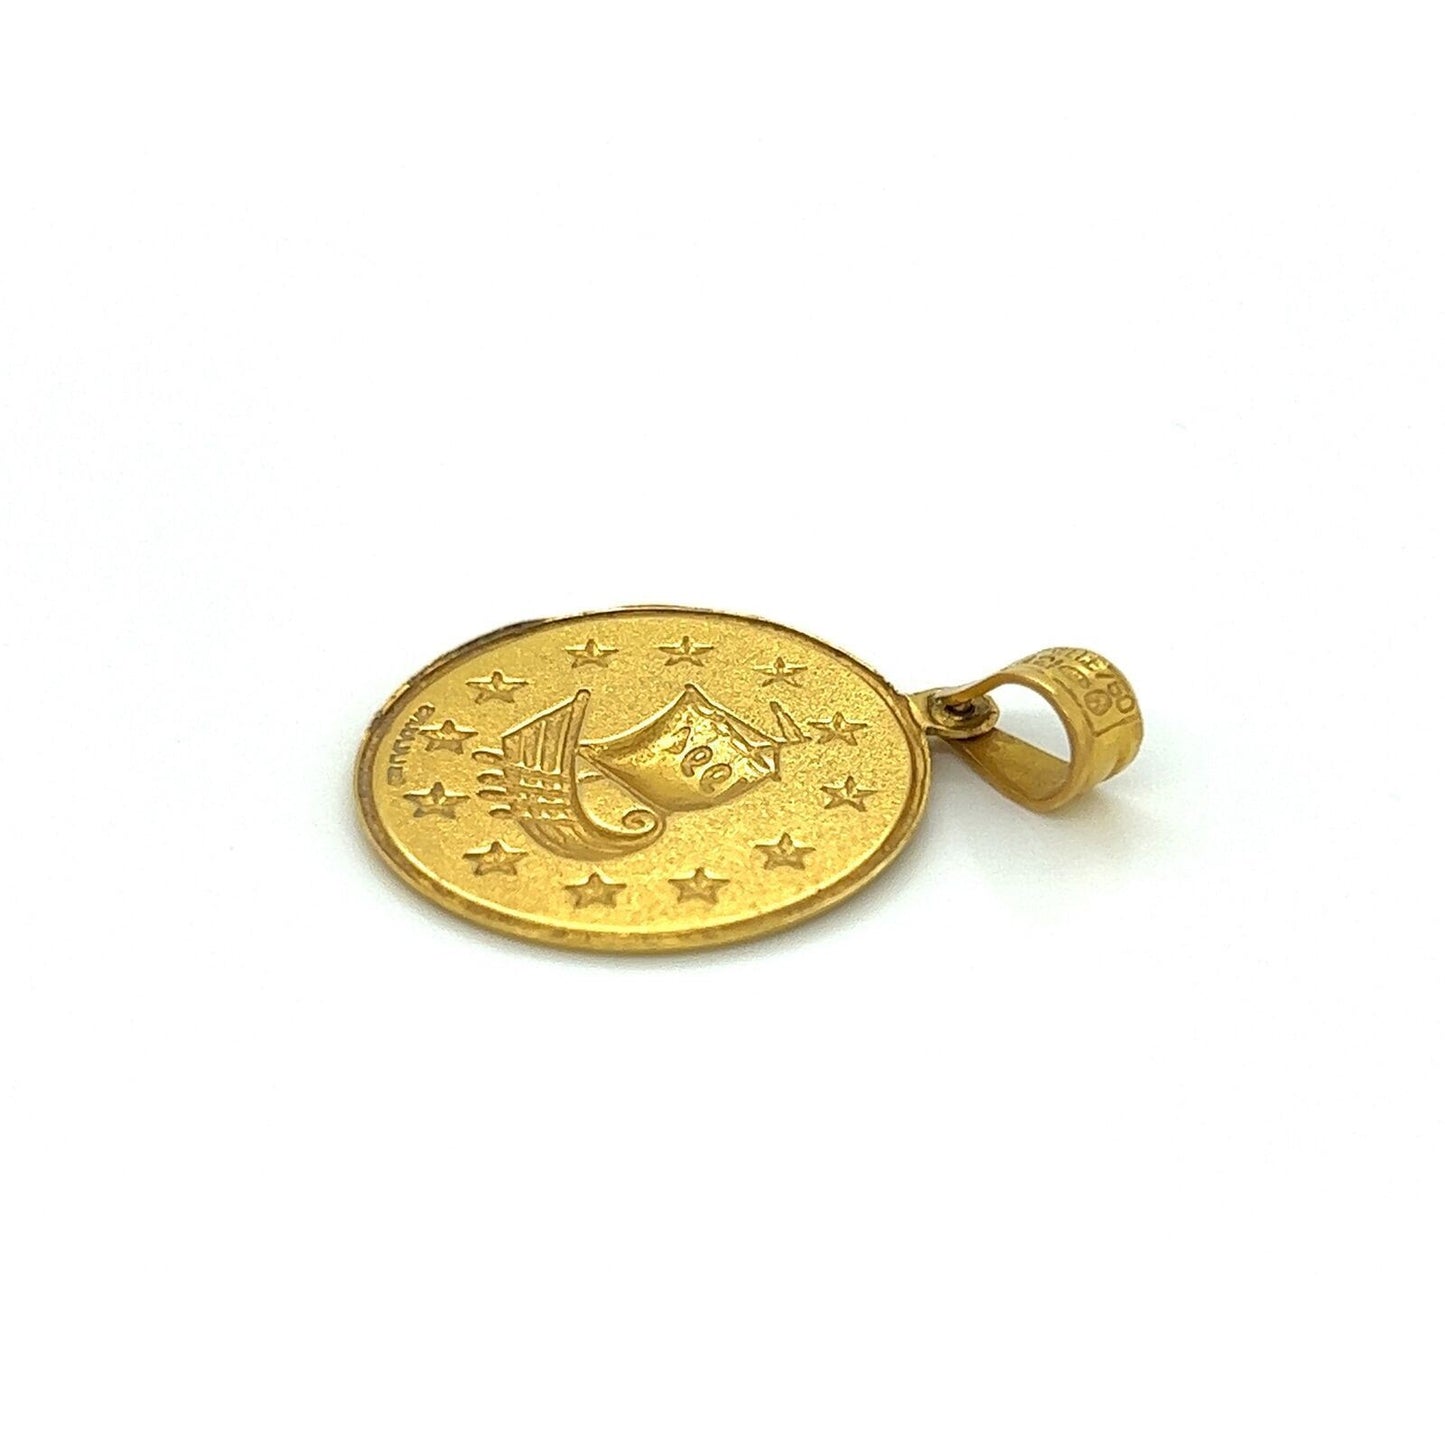 Ilias Lalaounis 1994 Sailboat 18k Yellow Gold Round Coin Charm Pendant